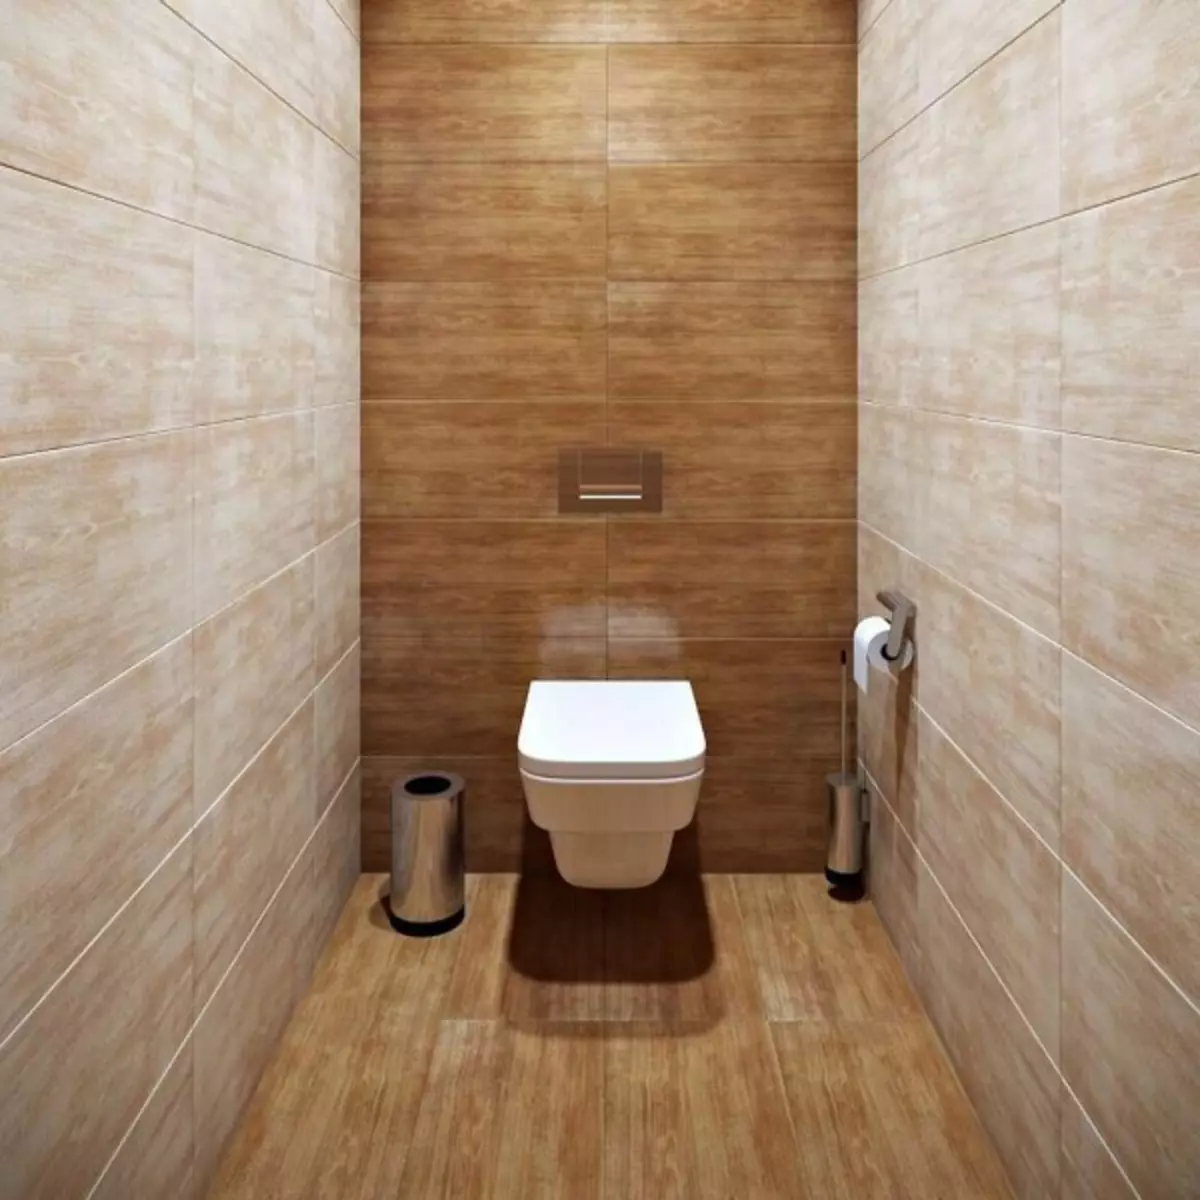 طراحی توالت: توسعه خودتان را توسعه دهید